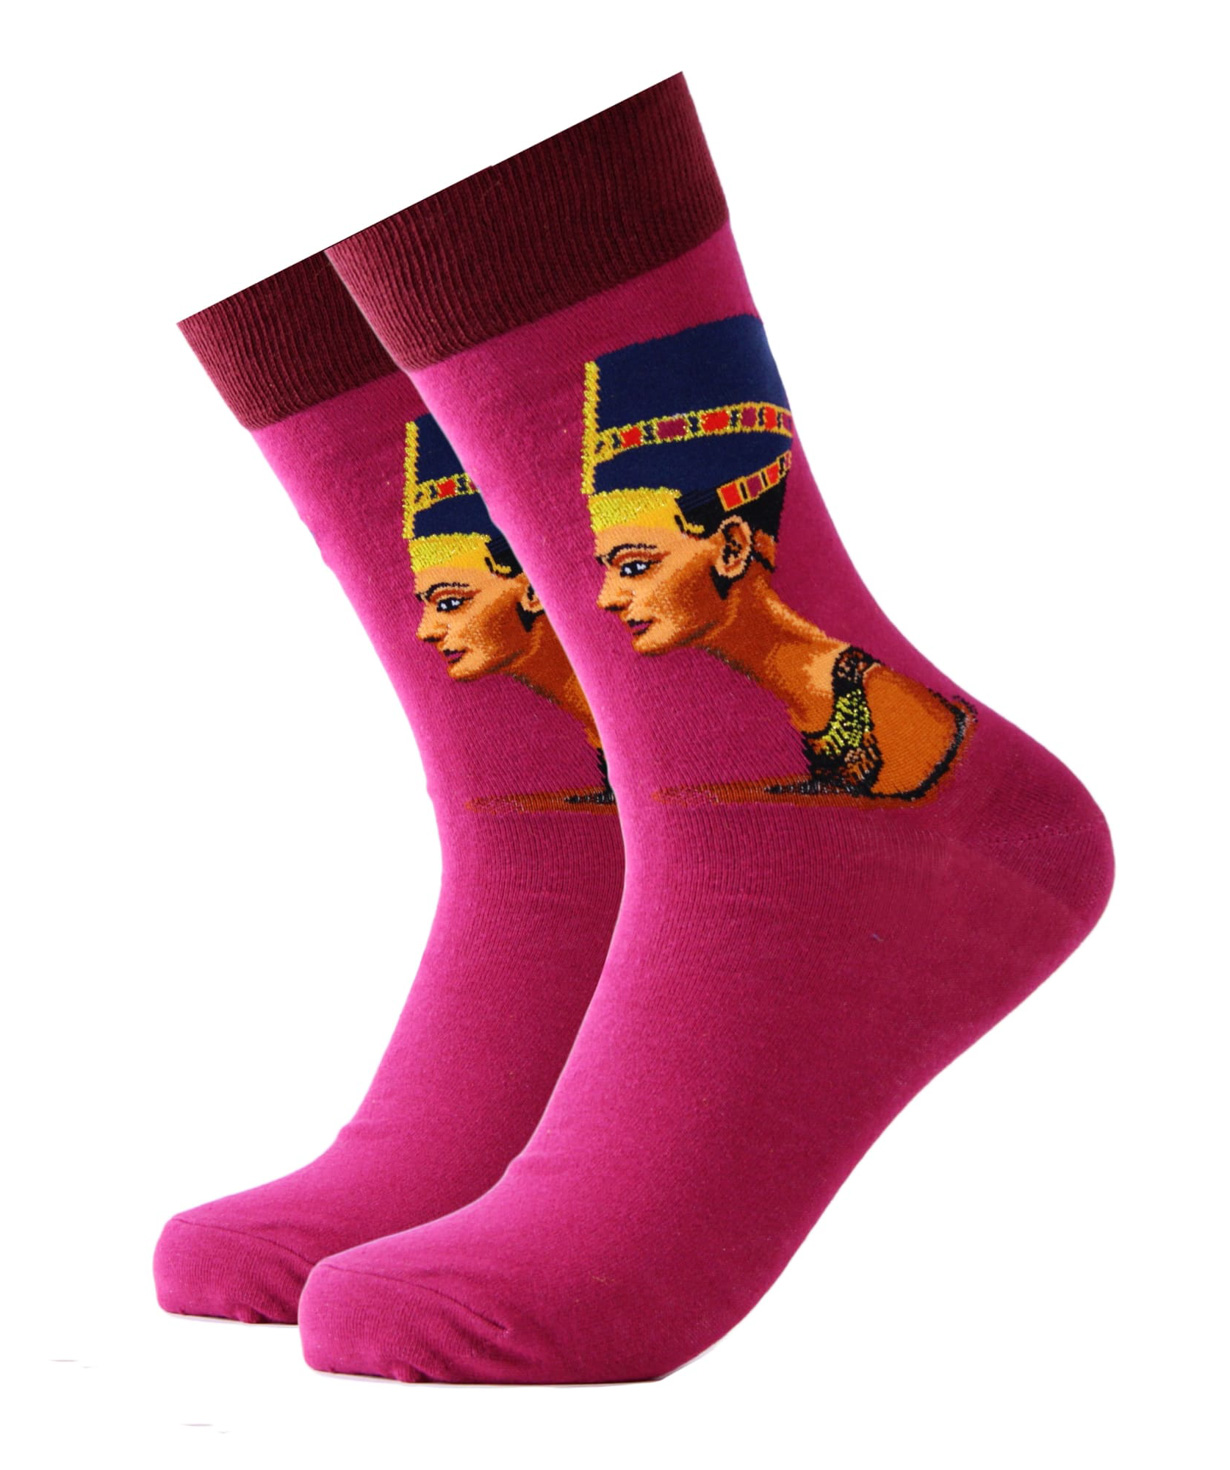 Socks `Zeal Socks` pharaoh